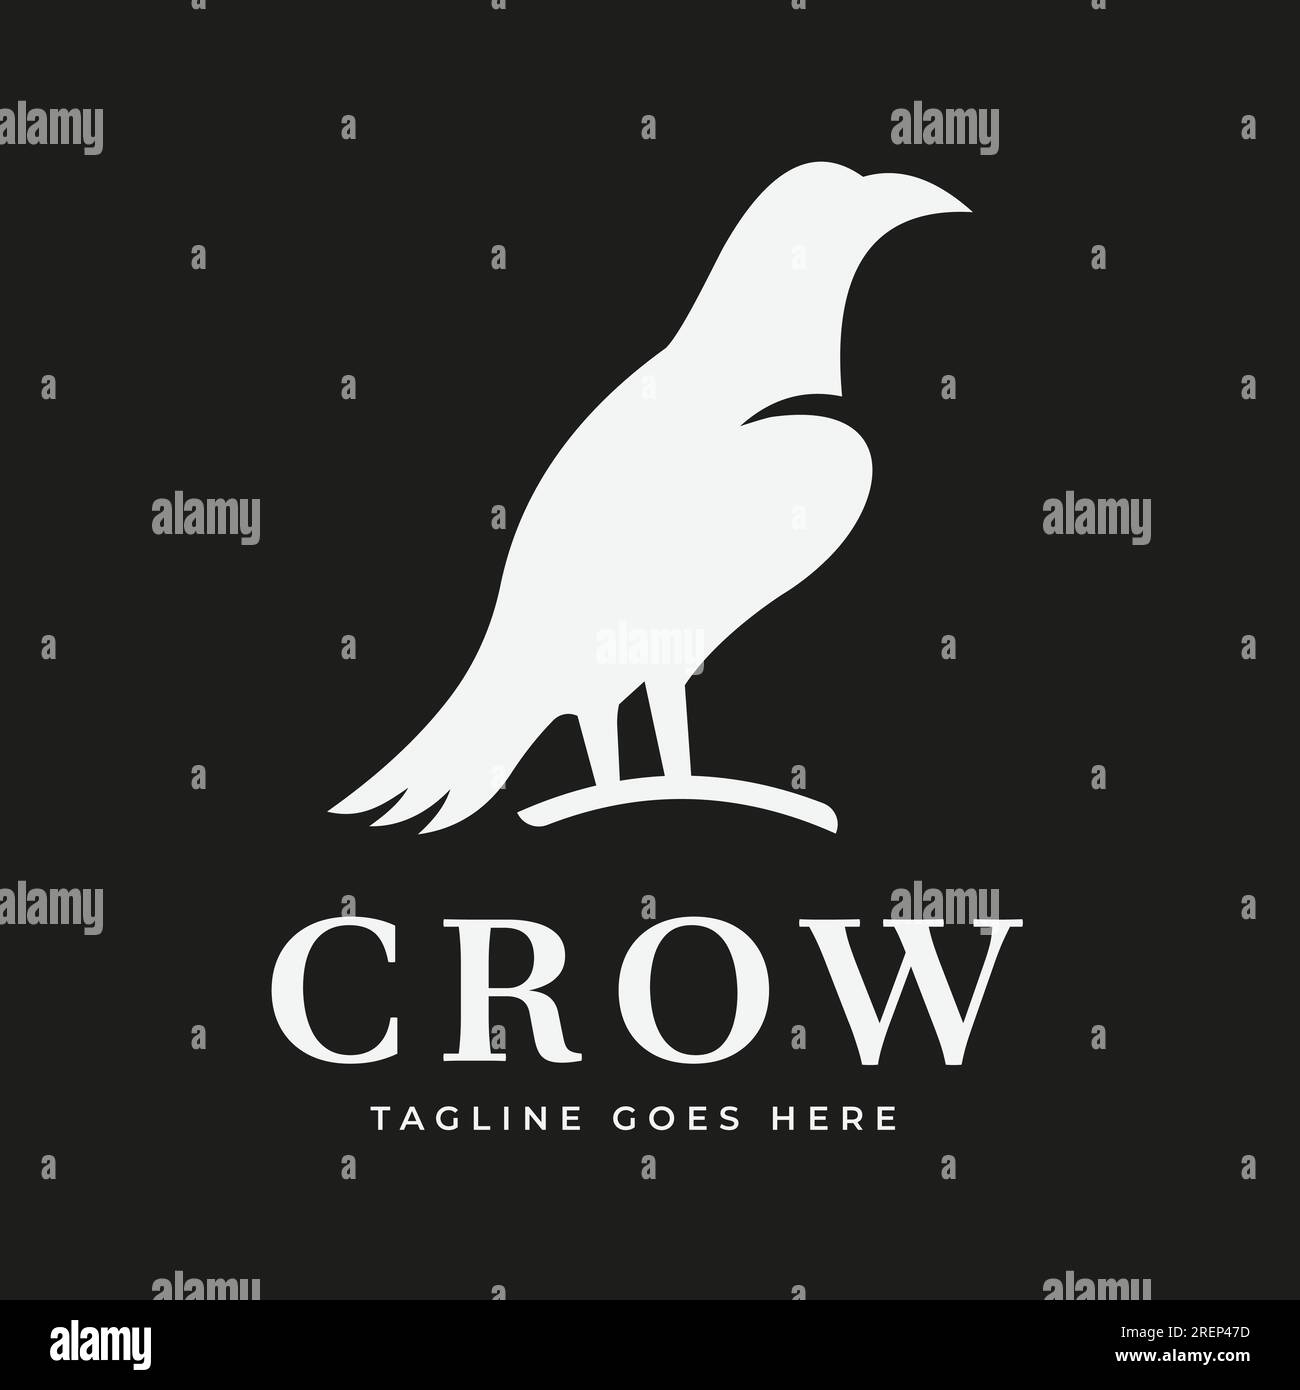 Crow vector silueta plana ilustración de fondo oscuro Logo diseño vectorial Ilustración del Vector